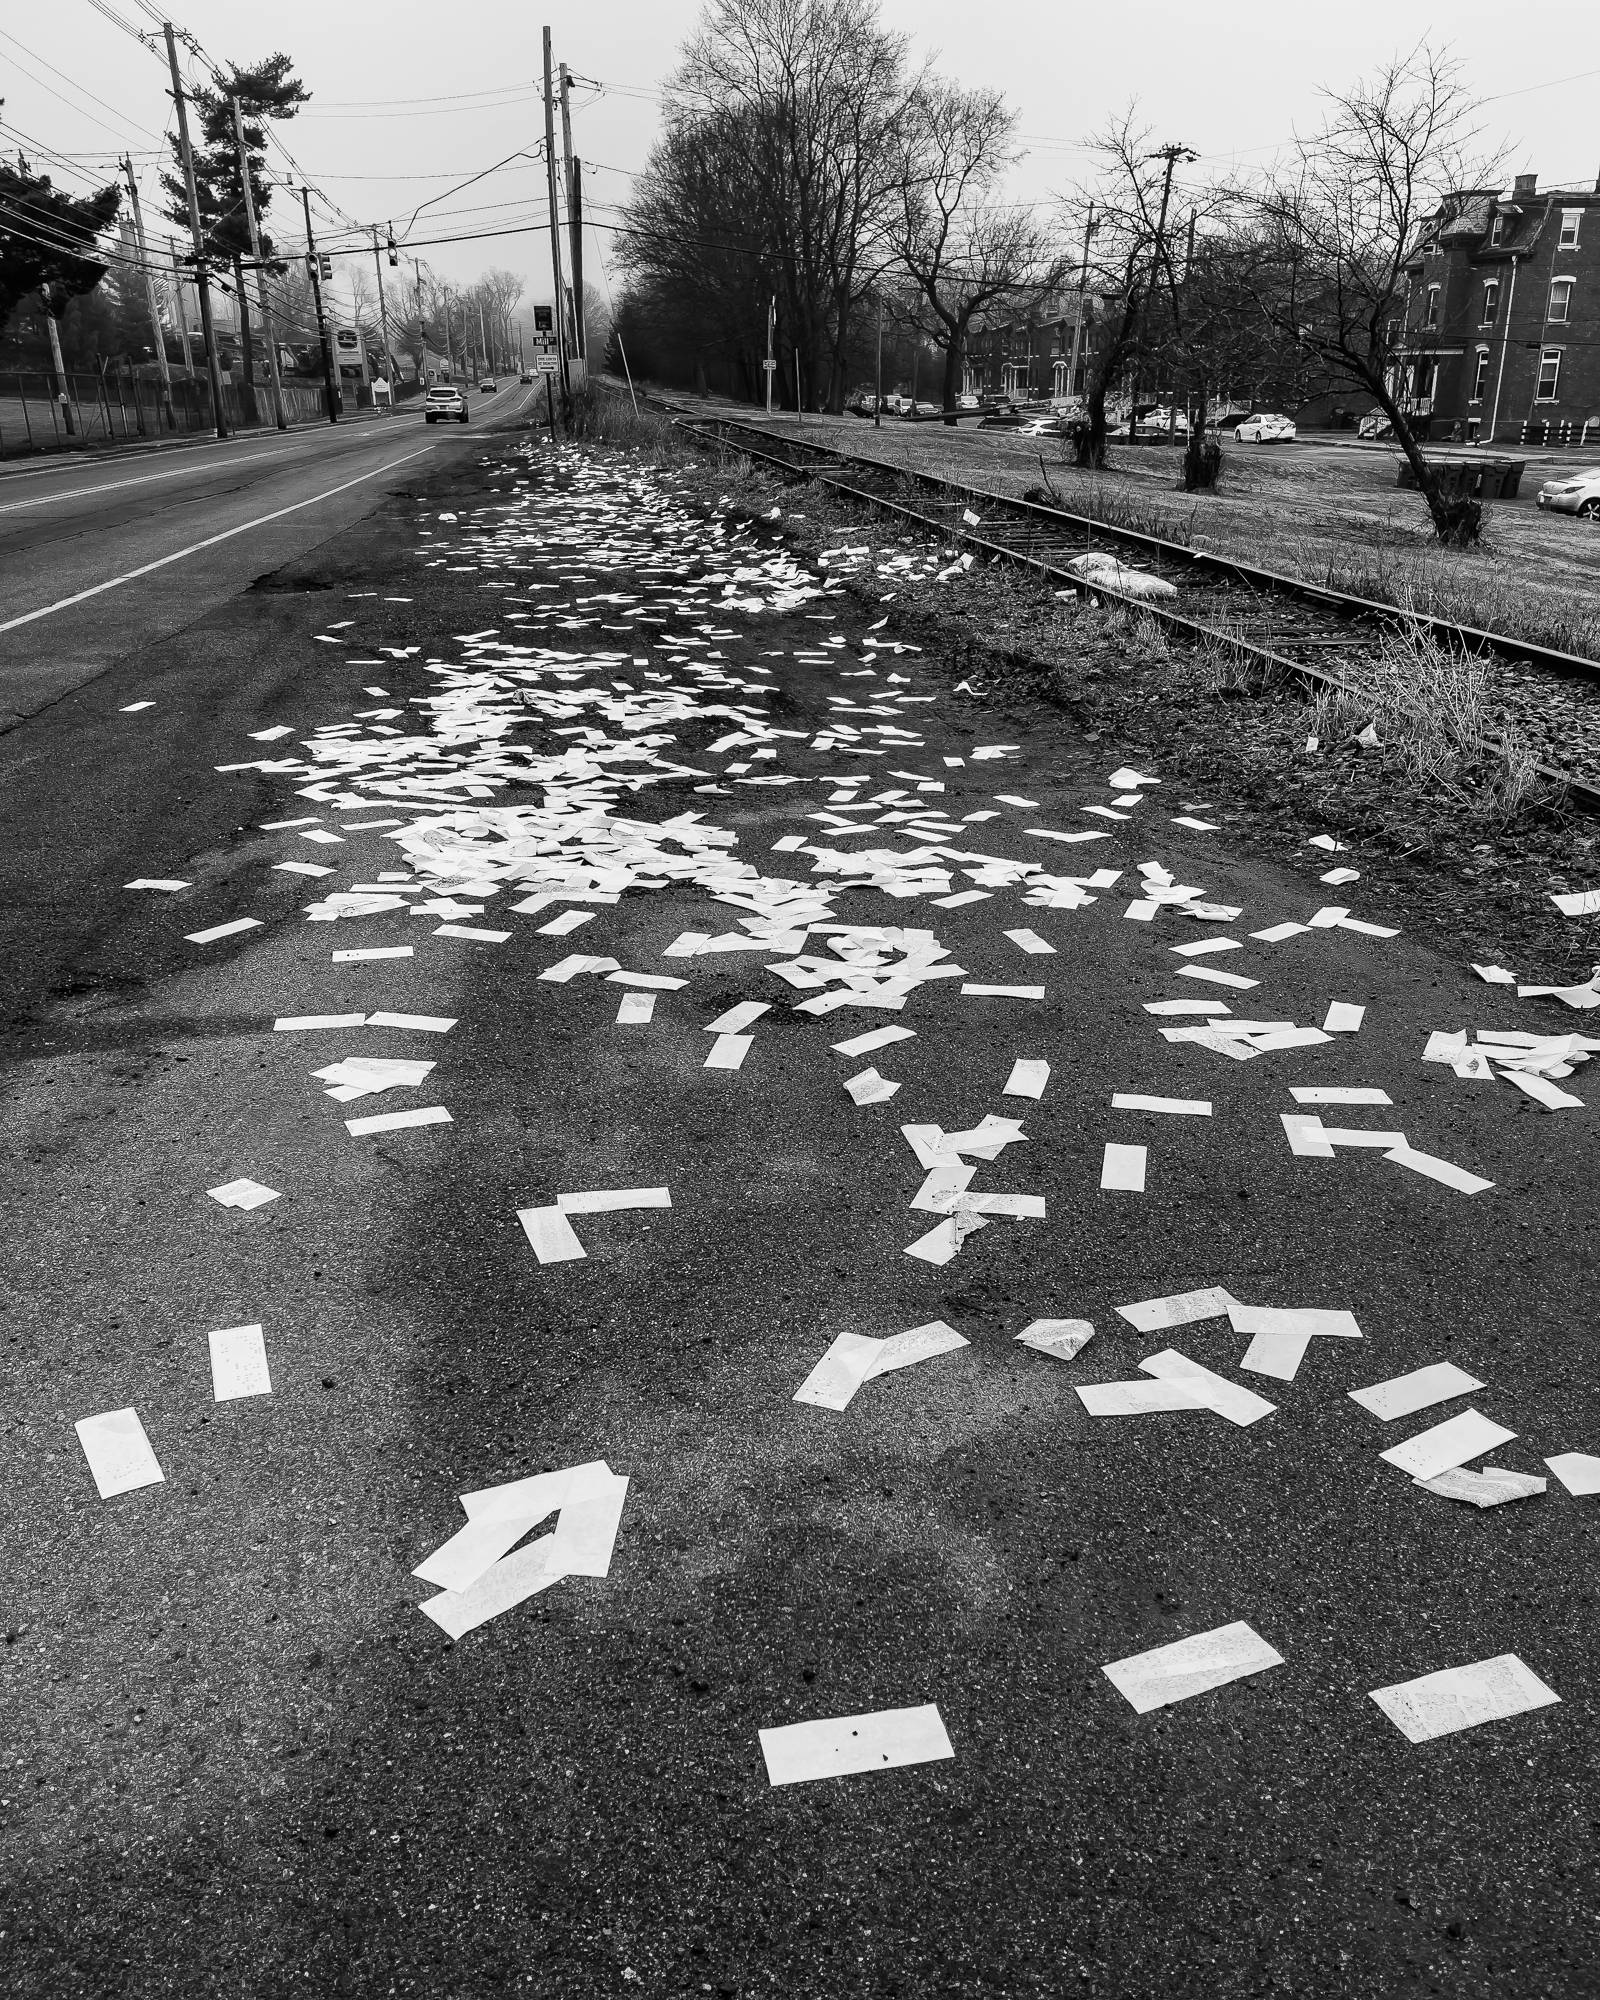 paper strewn along roadside